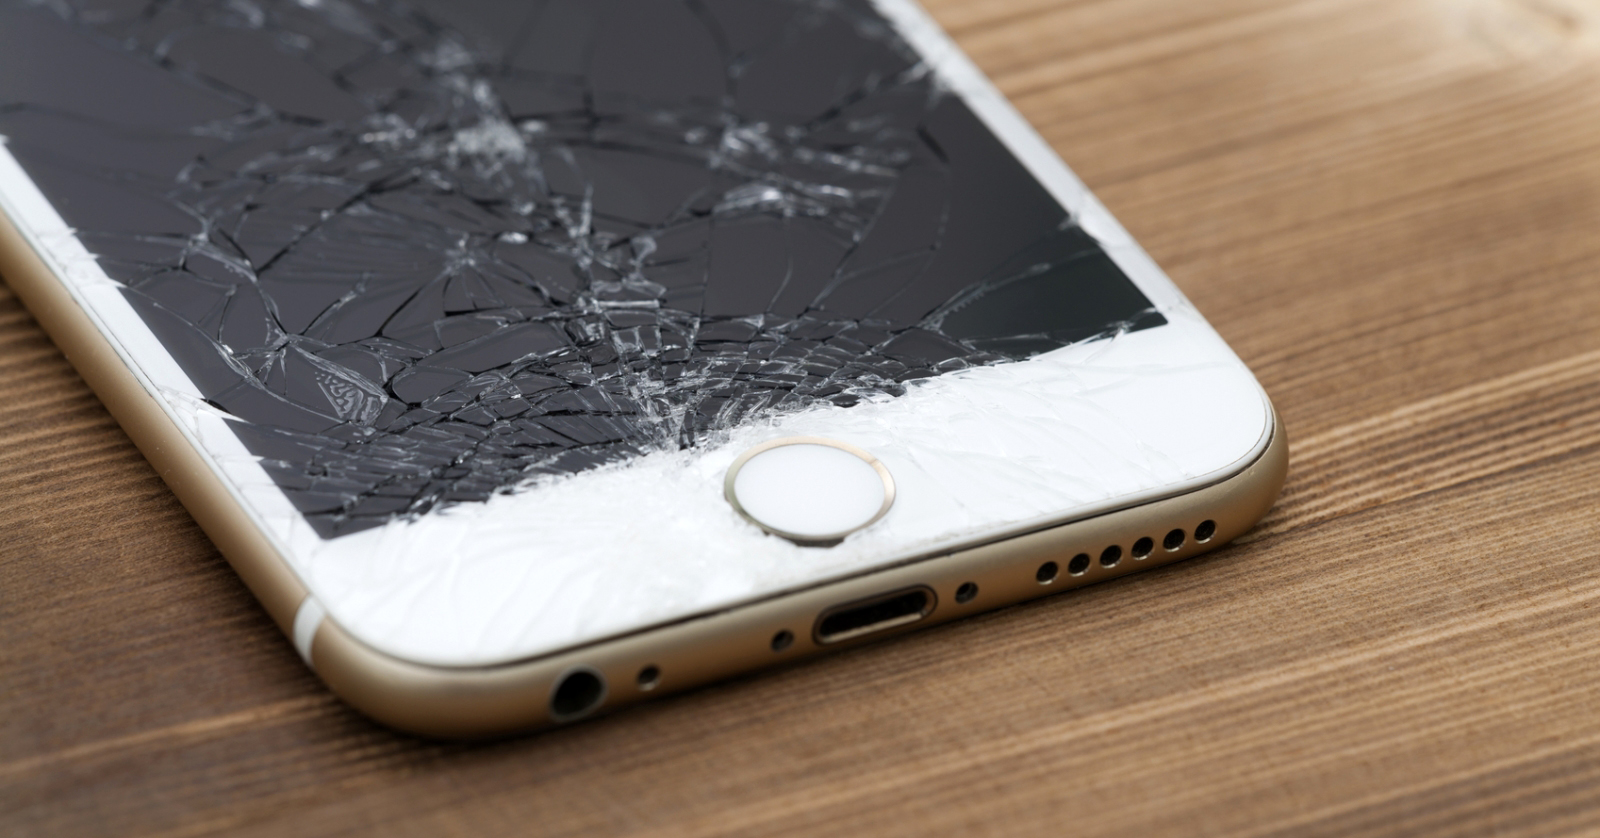 Tuyệt chiêu “trị” màn hình điện thoại vỡ không tốn một xu